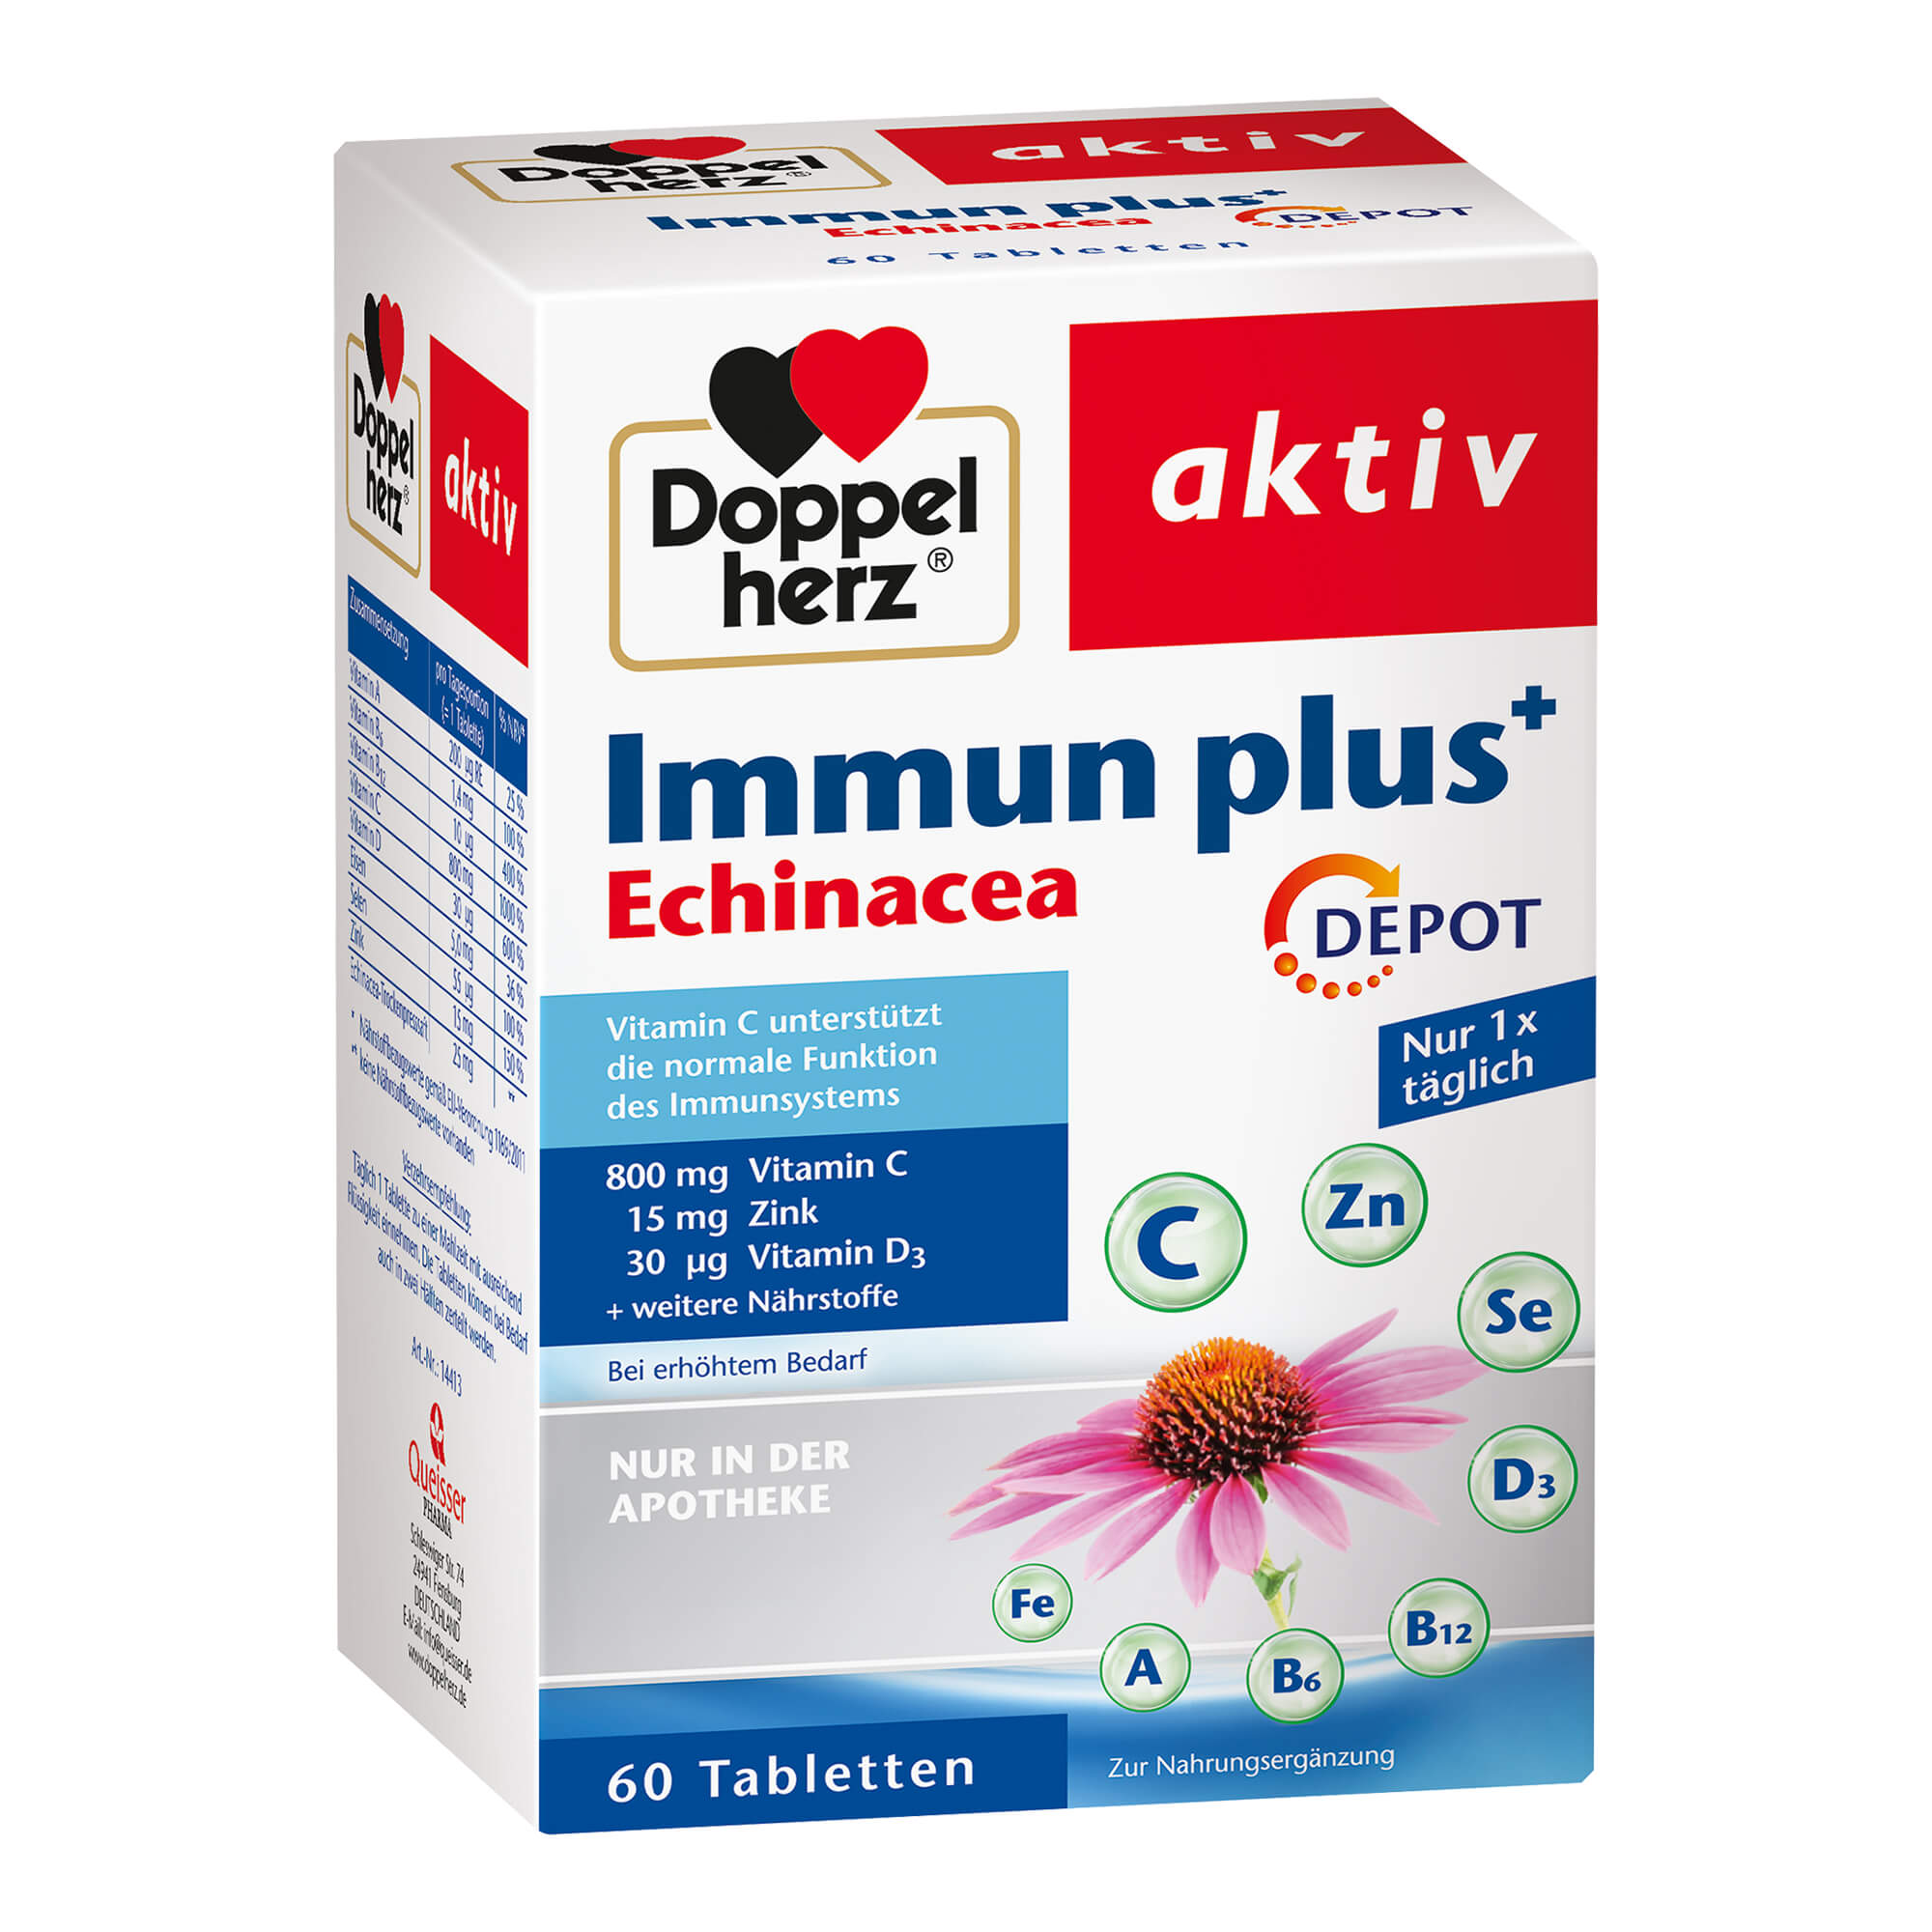 Nahrungsergänzungsmittel mit Vitaminen und Spurenelementen, Echinacea-Trockenpresssaft.